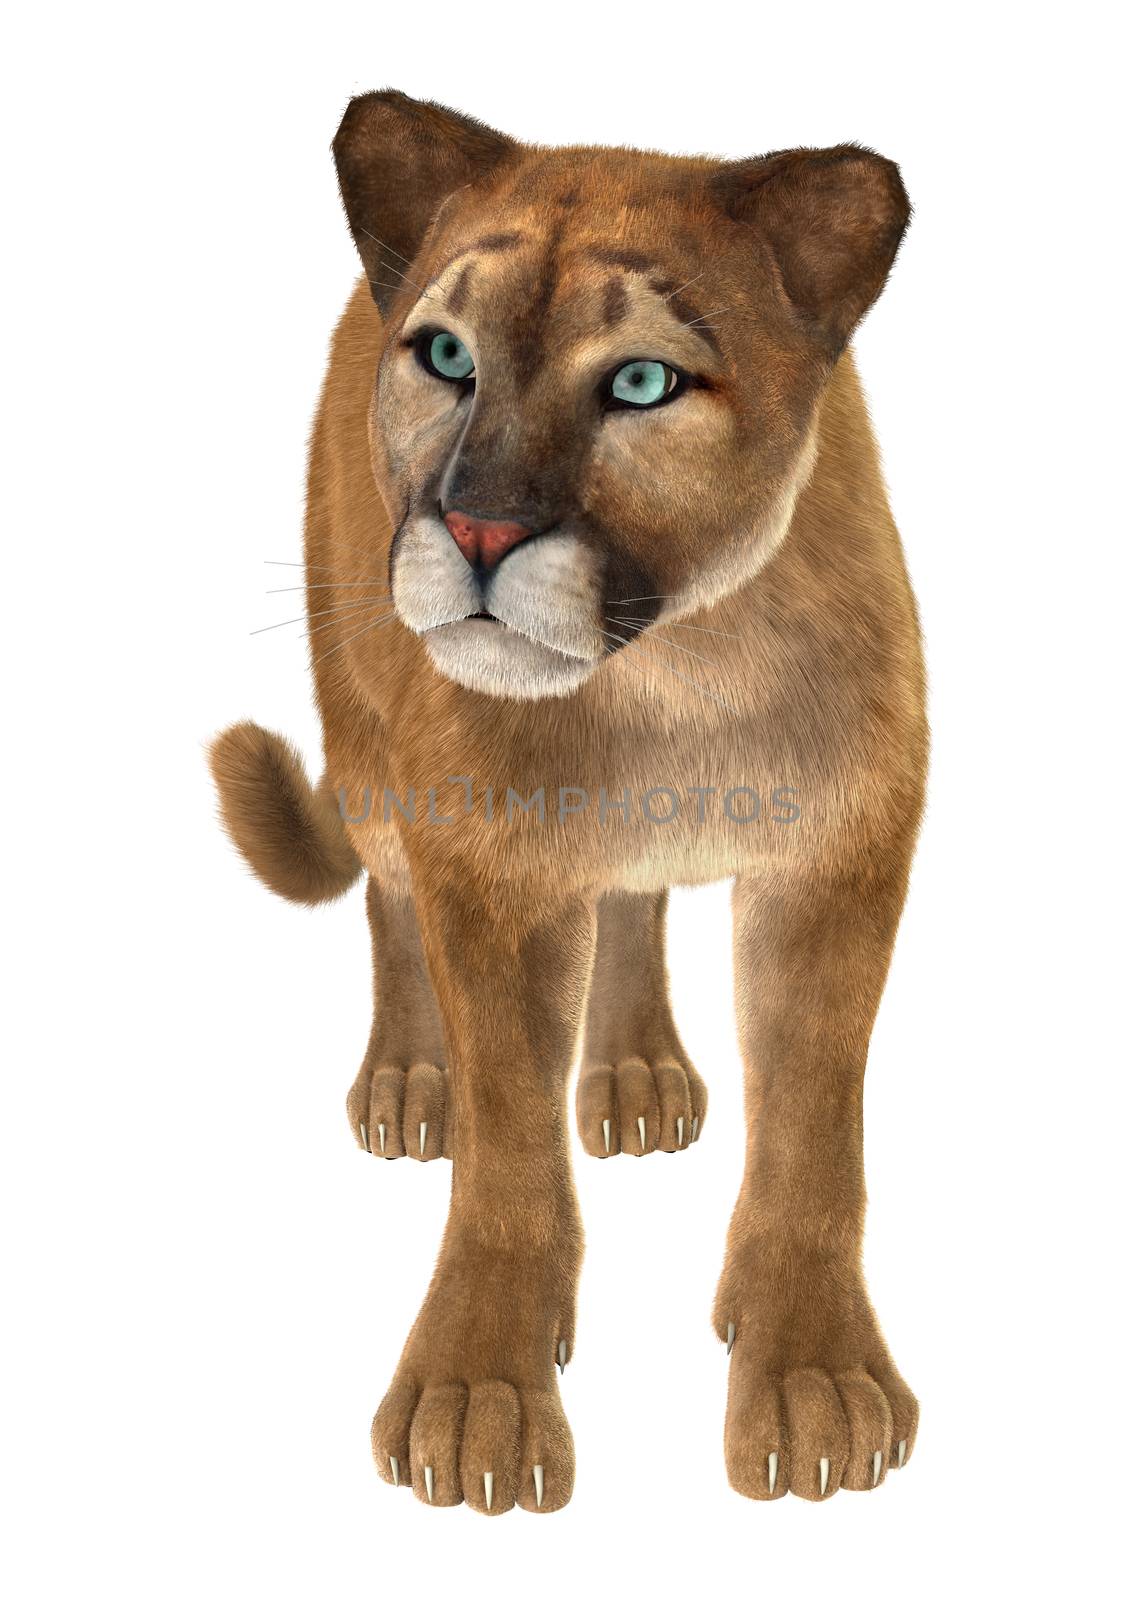 Big Cat Puma by Vac